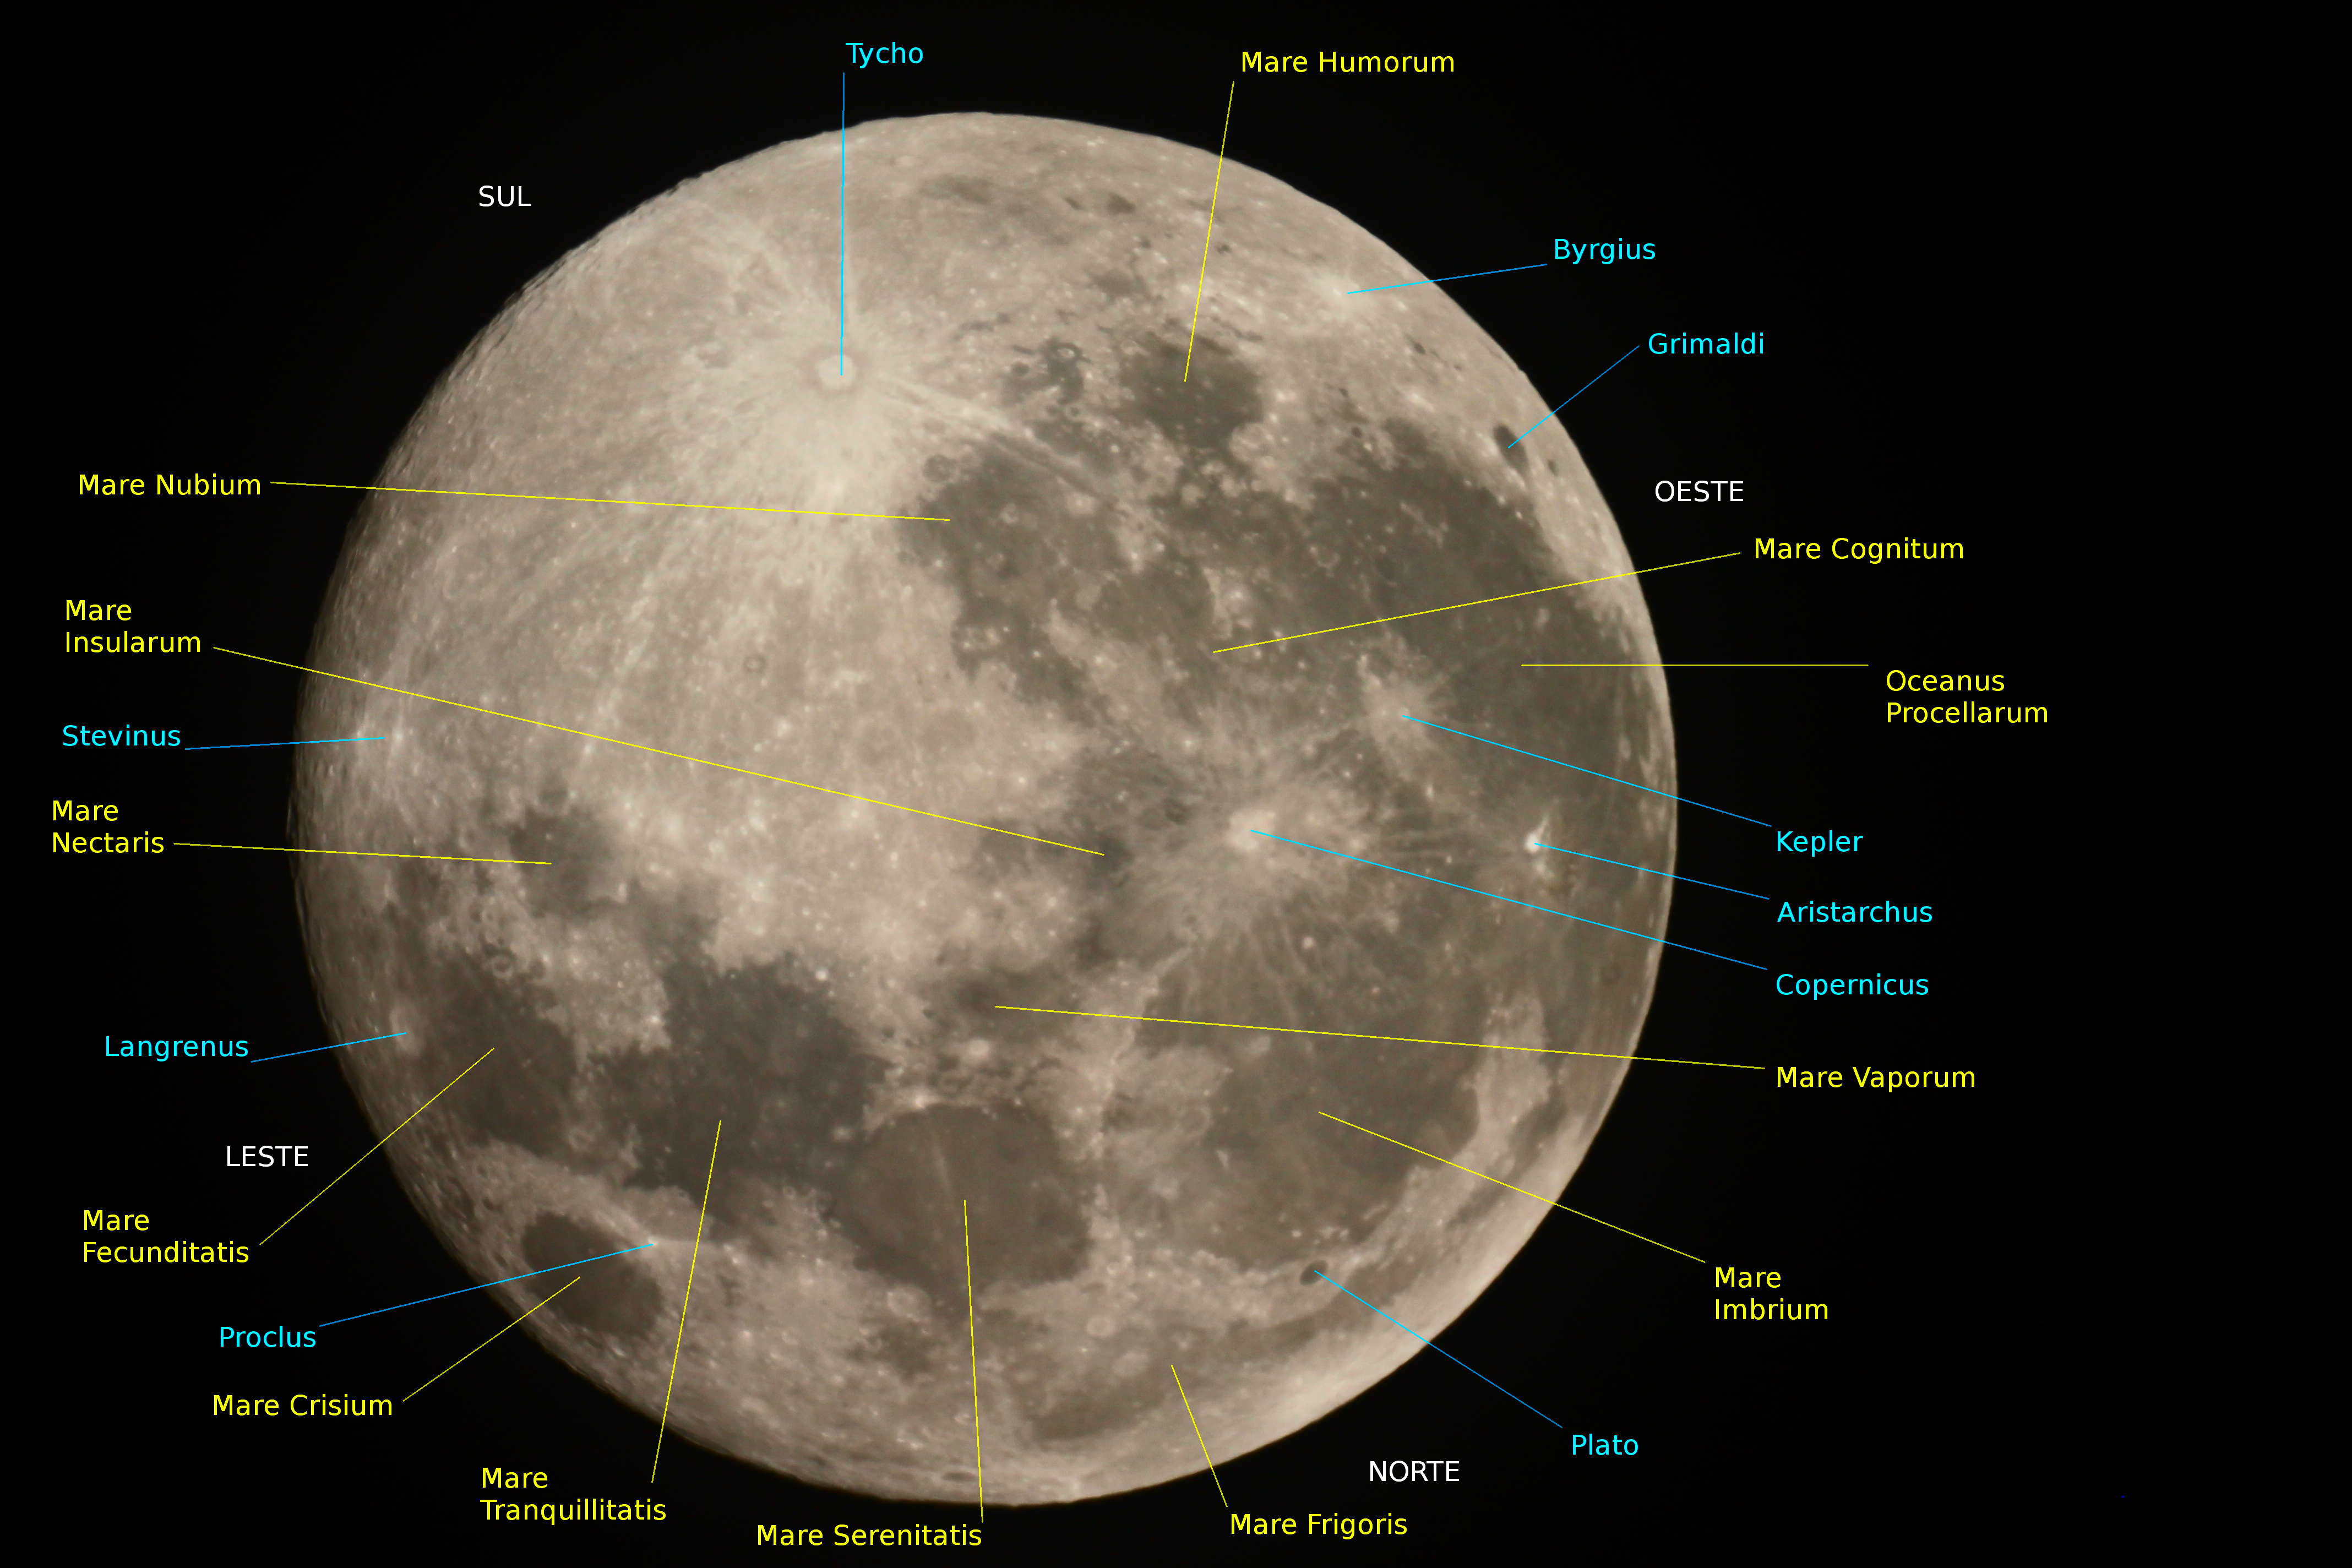 Meu mapa lunar caseiro ls /home/felipehw